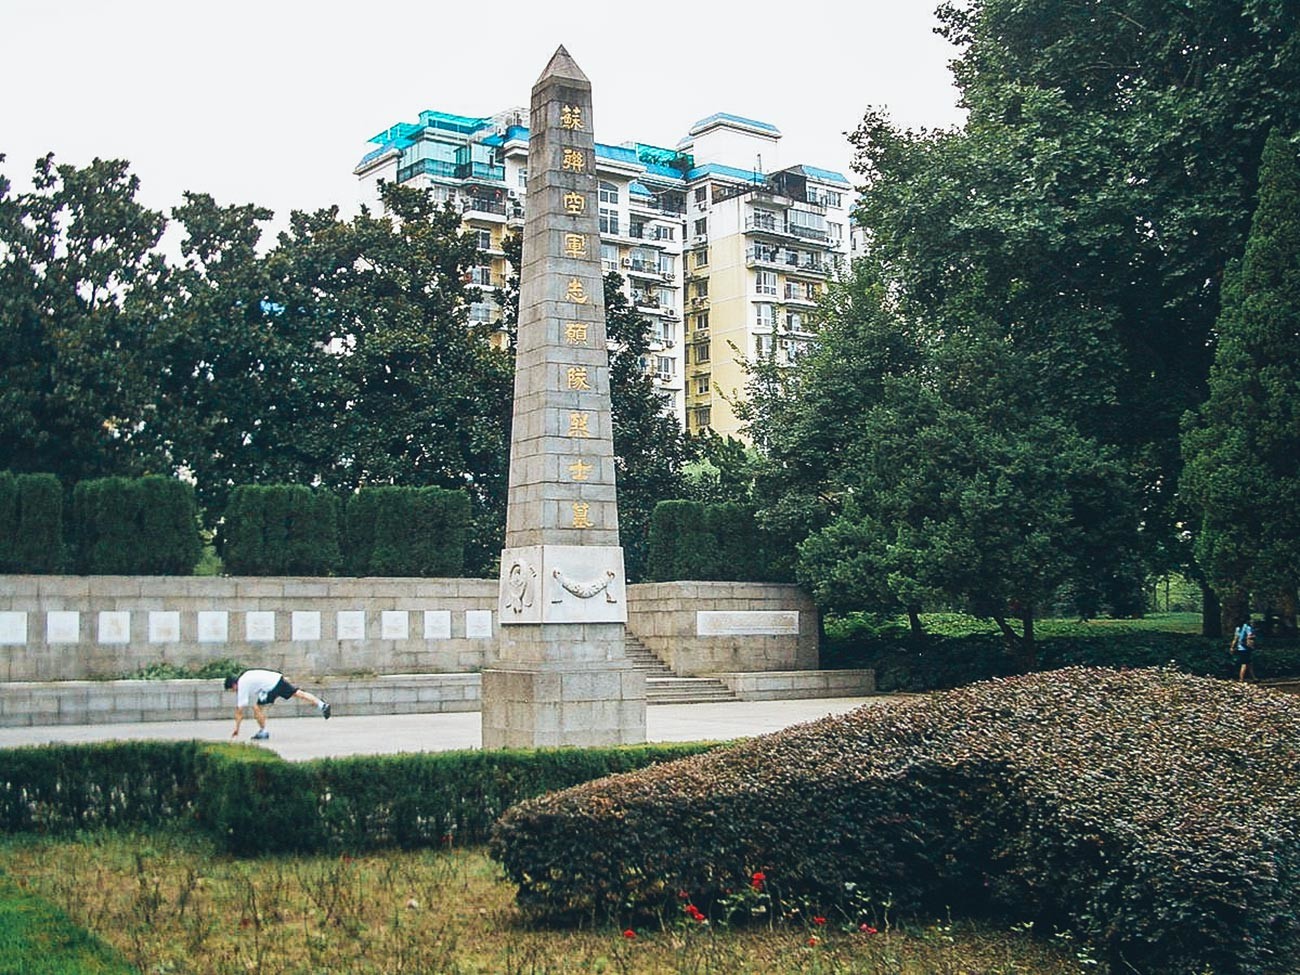 Споменик на гробљу совјетских пилота који су погинули у борбама кинеског народа против јапанских освајача 1938. (Парк Ђефанг, Ханкоу, Вухан).